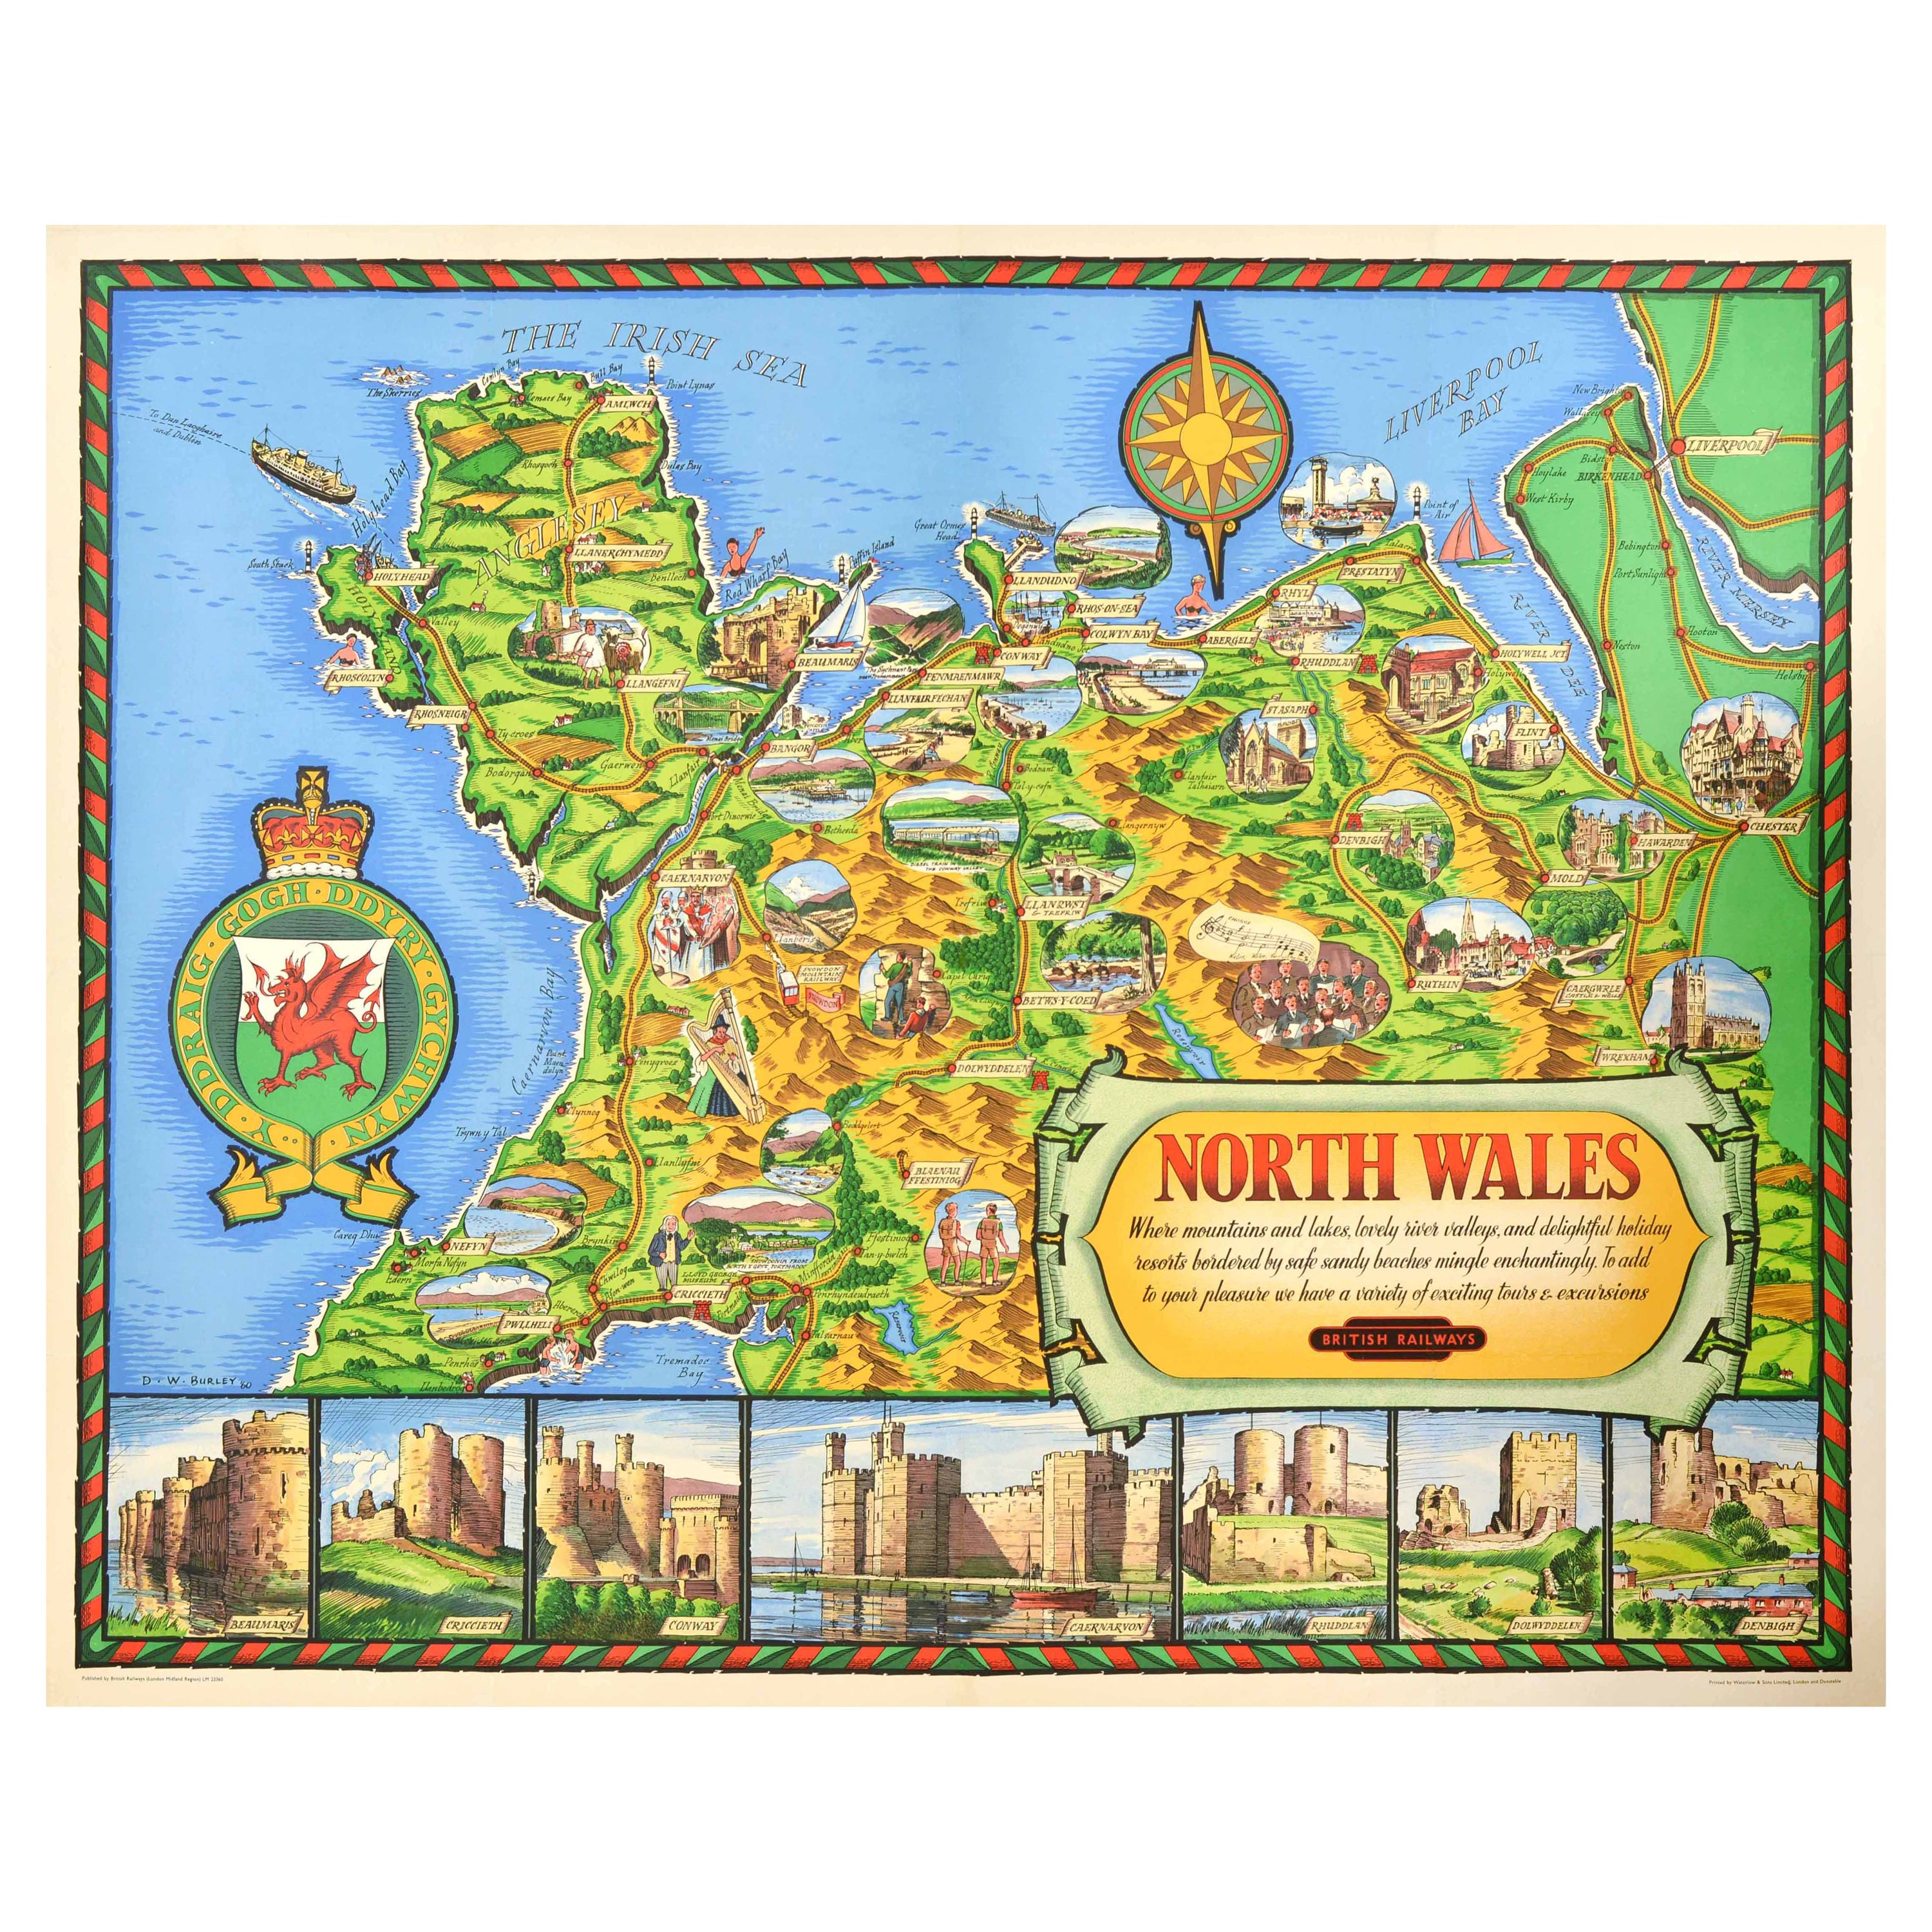 Original Vintage Travel Poster North Wales Map British Railways DW Burley en vente